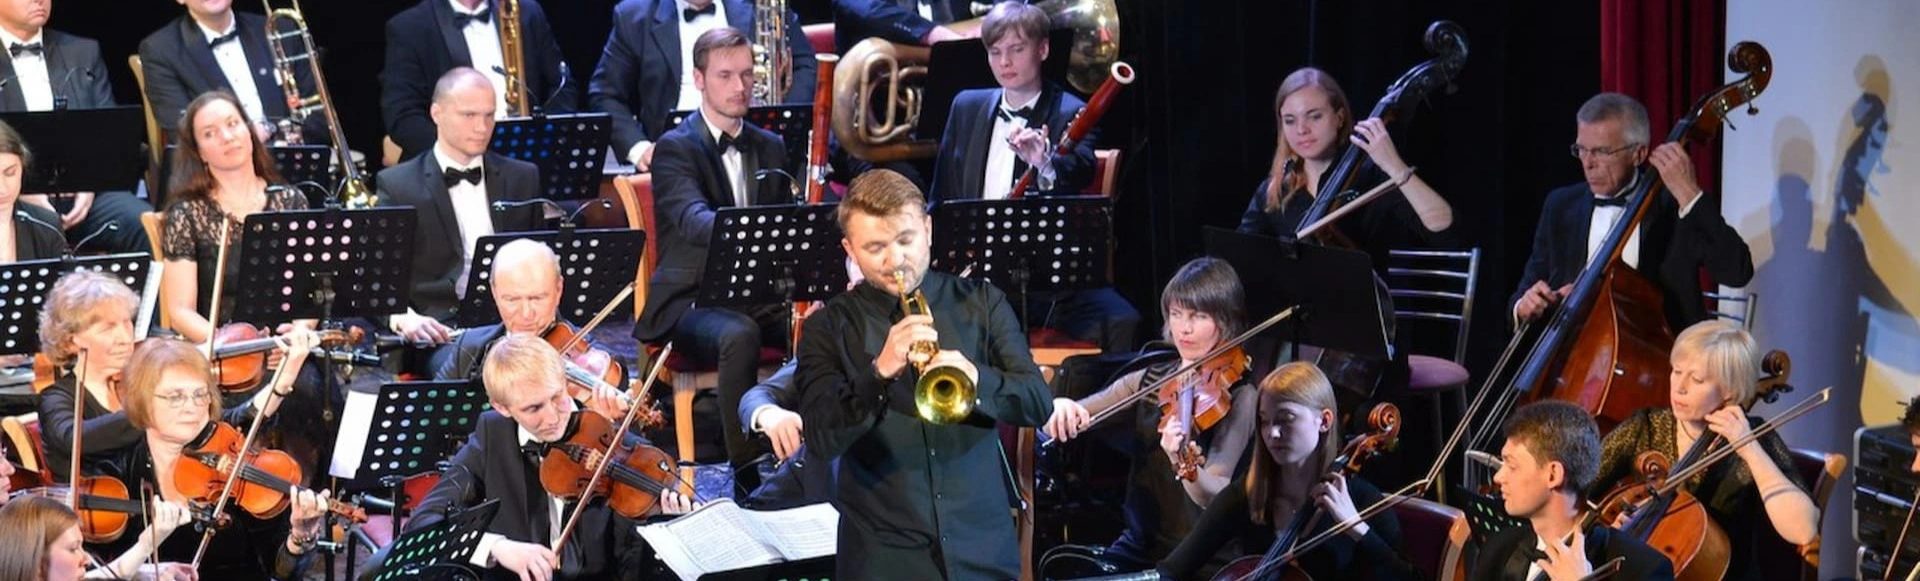 Праздничный концерт в честь Дня города Москвы